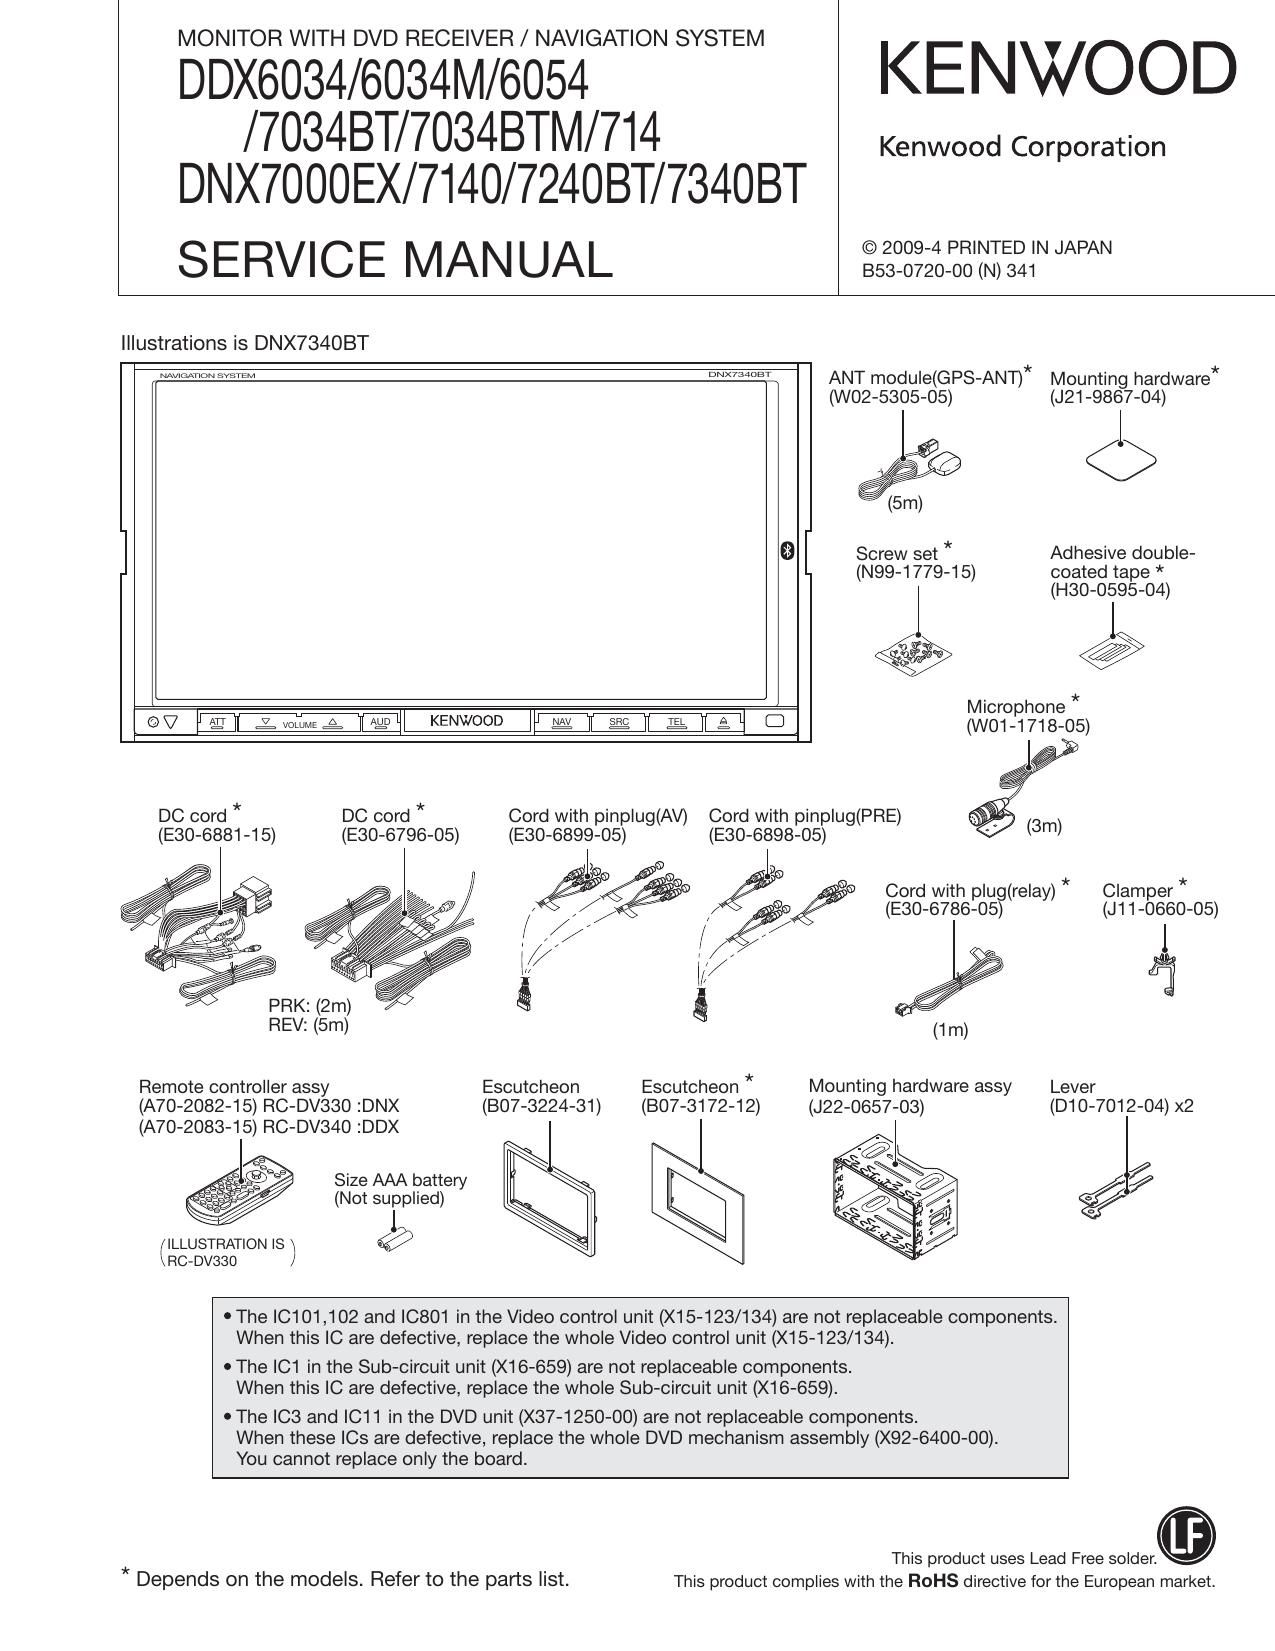 Kenwood DDX 7034 BT Service Manual